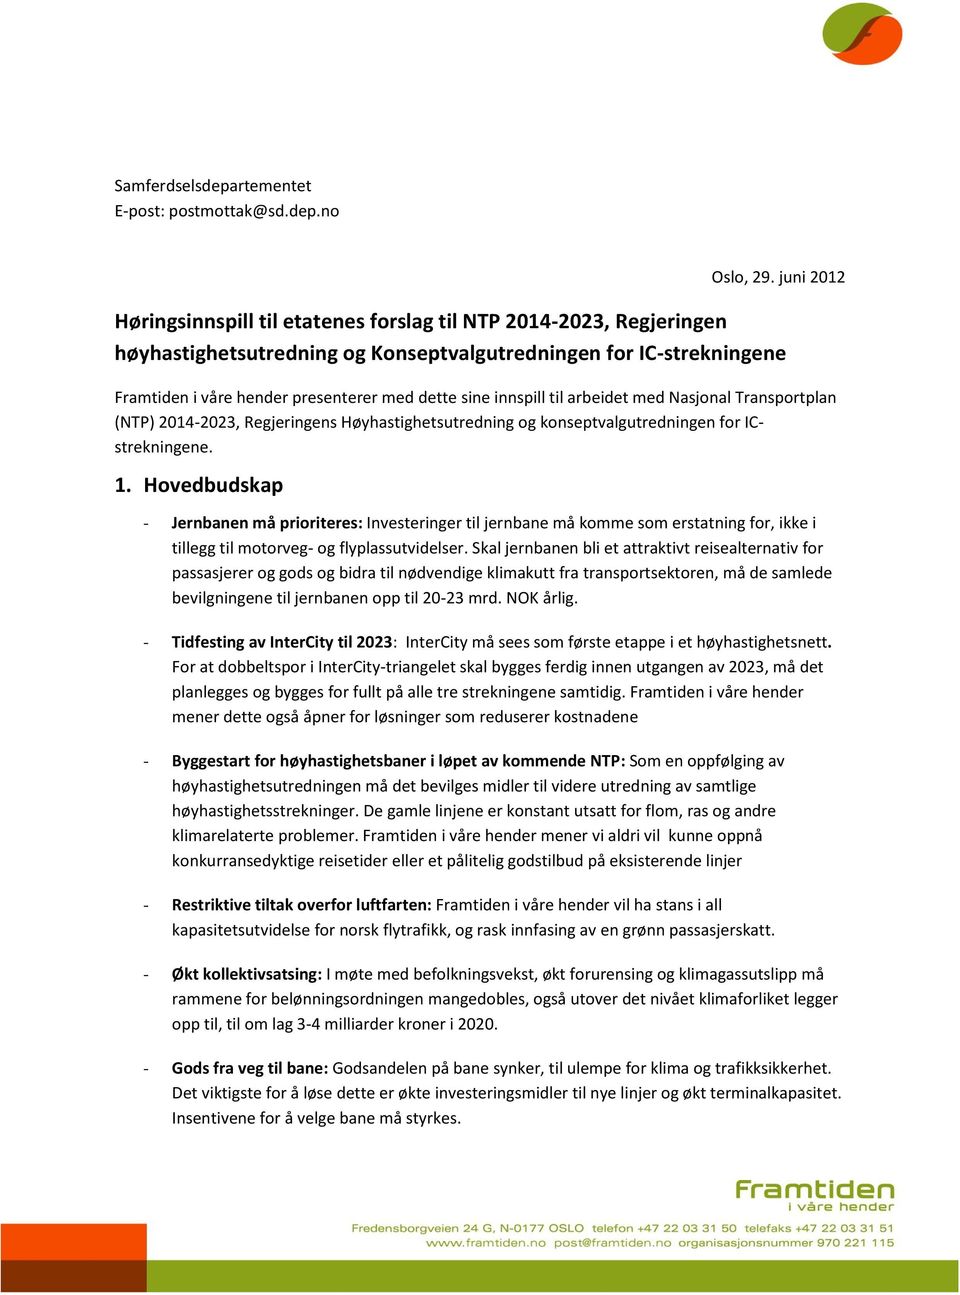 innspill til arbeidet med Nasjonal Transportplan (NTP) 2014-2023, Regjeringens Høyhastighetsutredning og konseptvalgutredningen for ICstrekningene. 1.